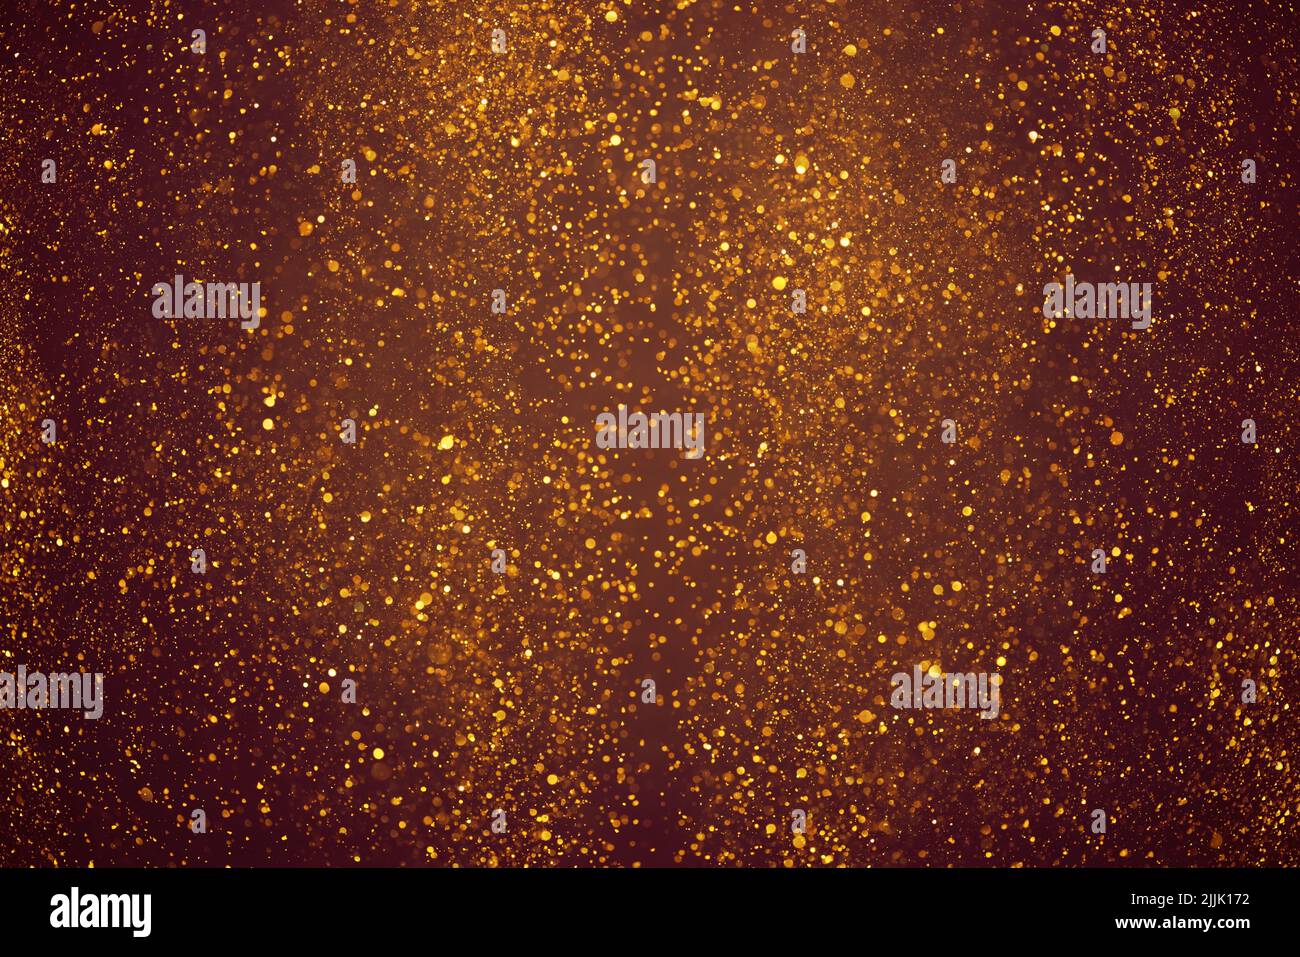 Golden glitter dust festive lights abstract bokeh background Stock Photo